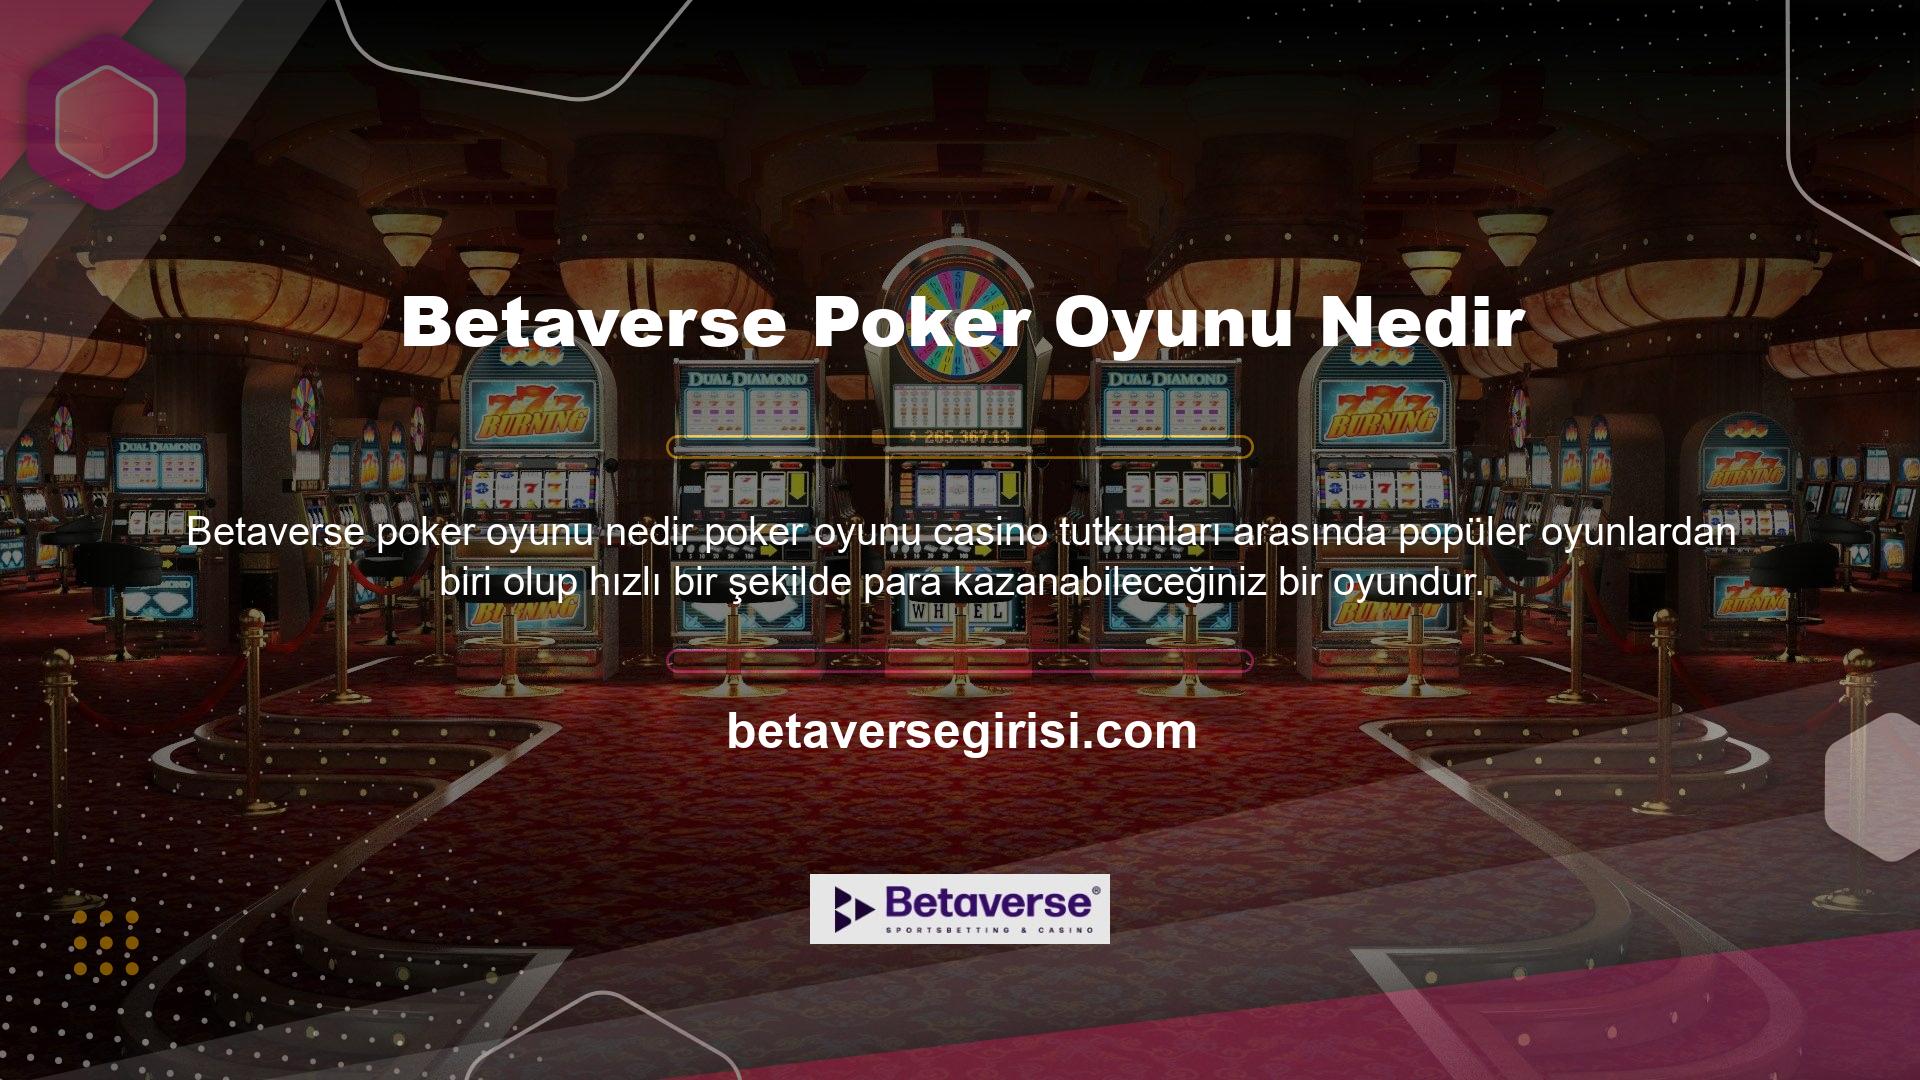 Bir casinoda oynamak isteyen kullanıcılar, sitede hangi poker oyunlarının mevcut olduğunu bilmek ister